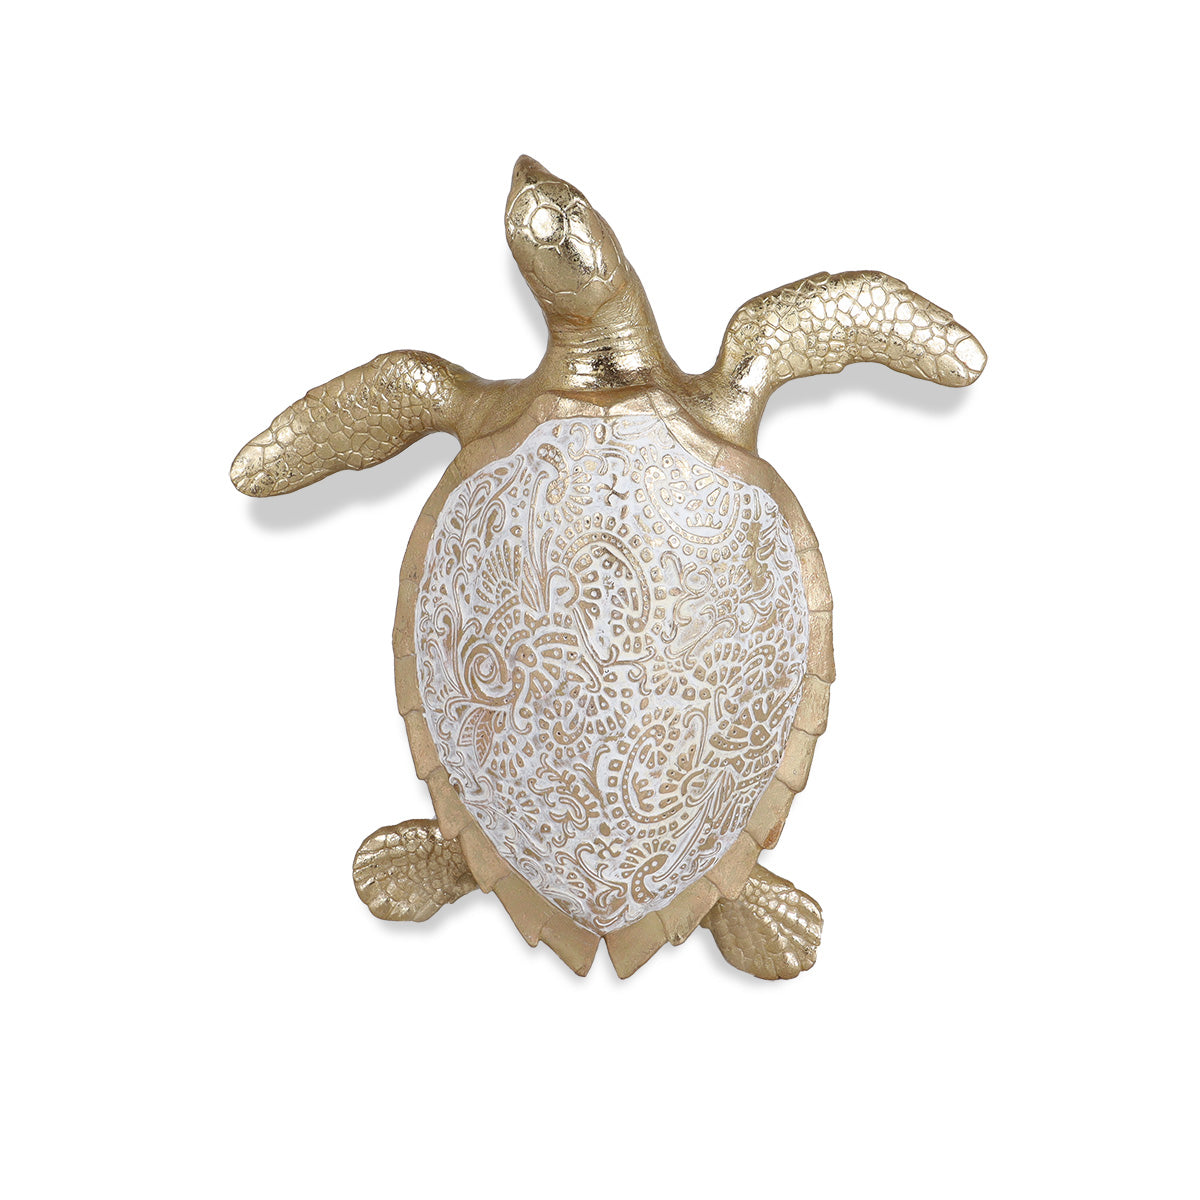 Sanya Turtle Large - Figurine | Vinoti Living